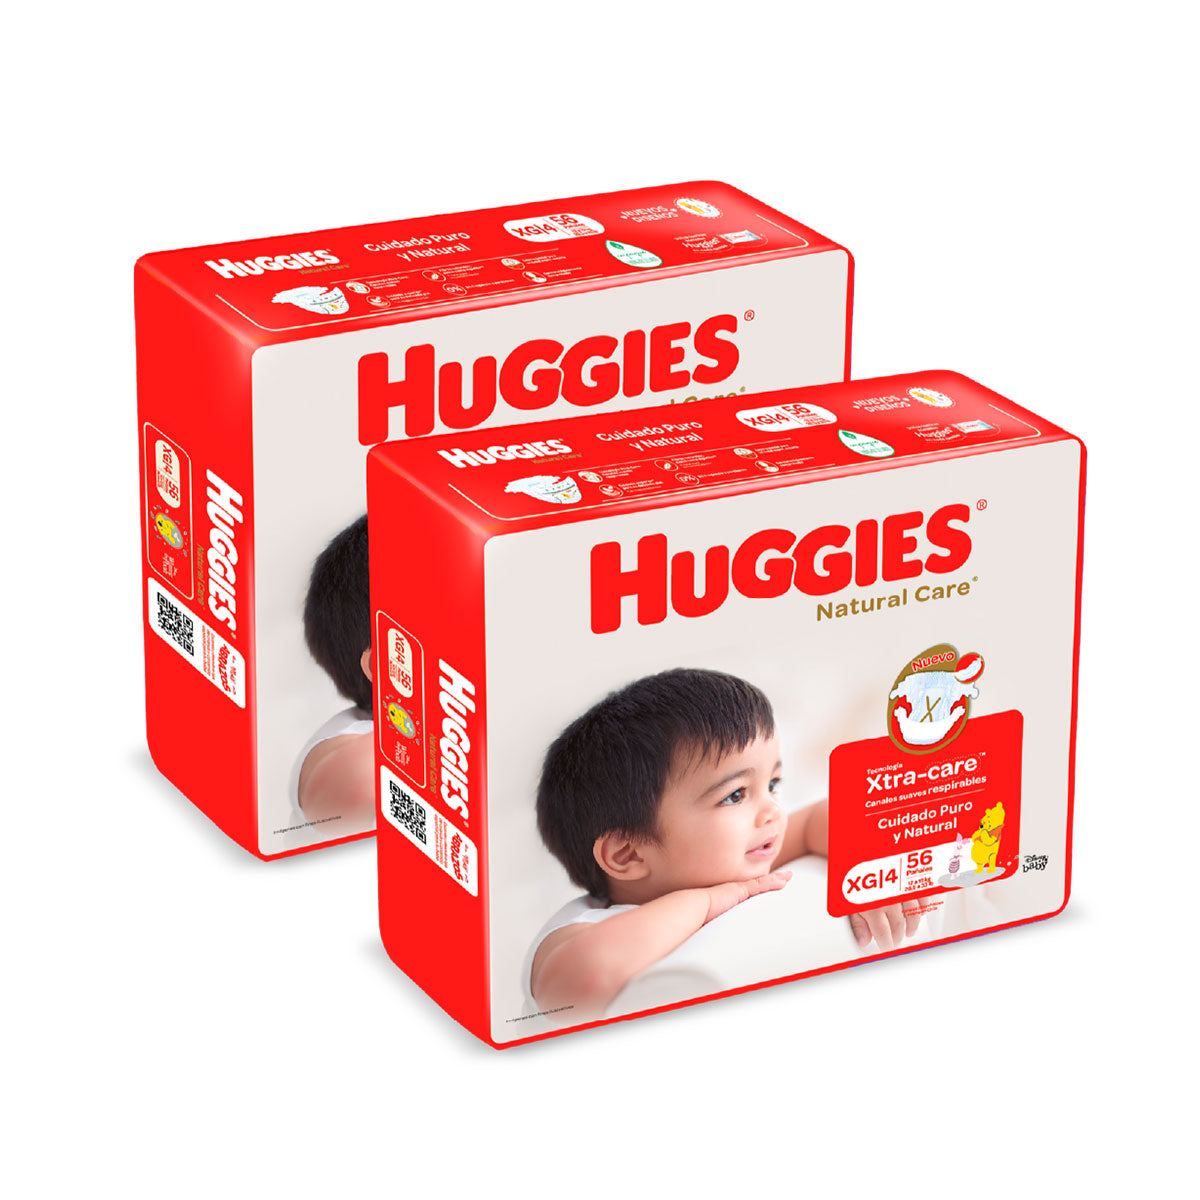 Pack Pañales Huggies Natural Care XG (56 unidades) 2x $27.990